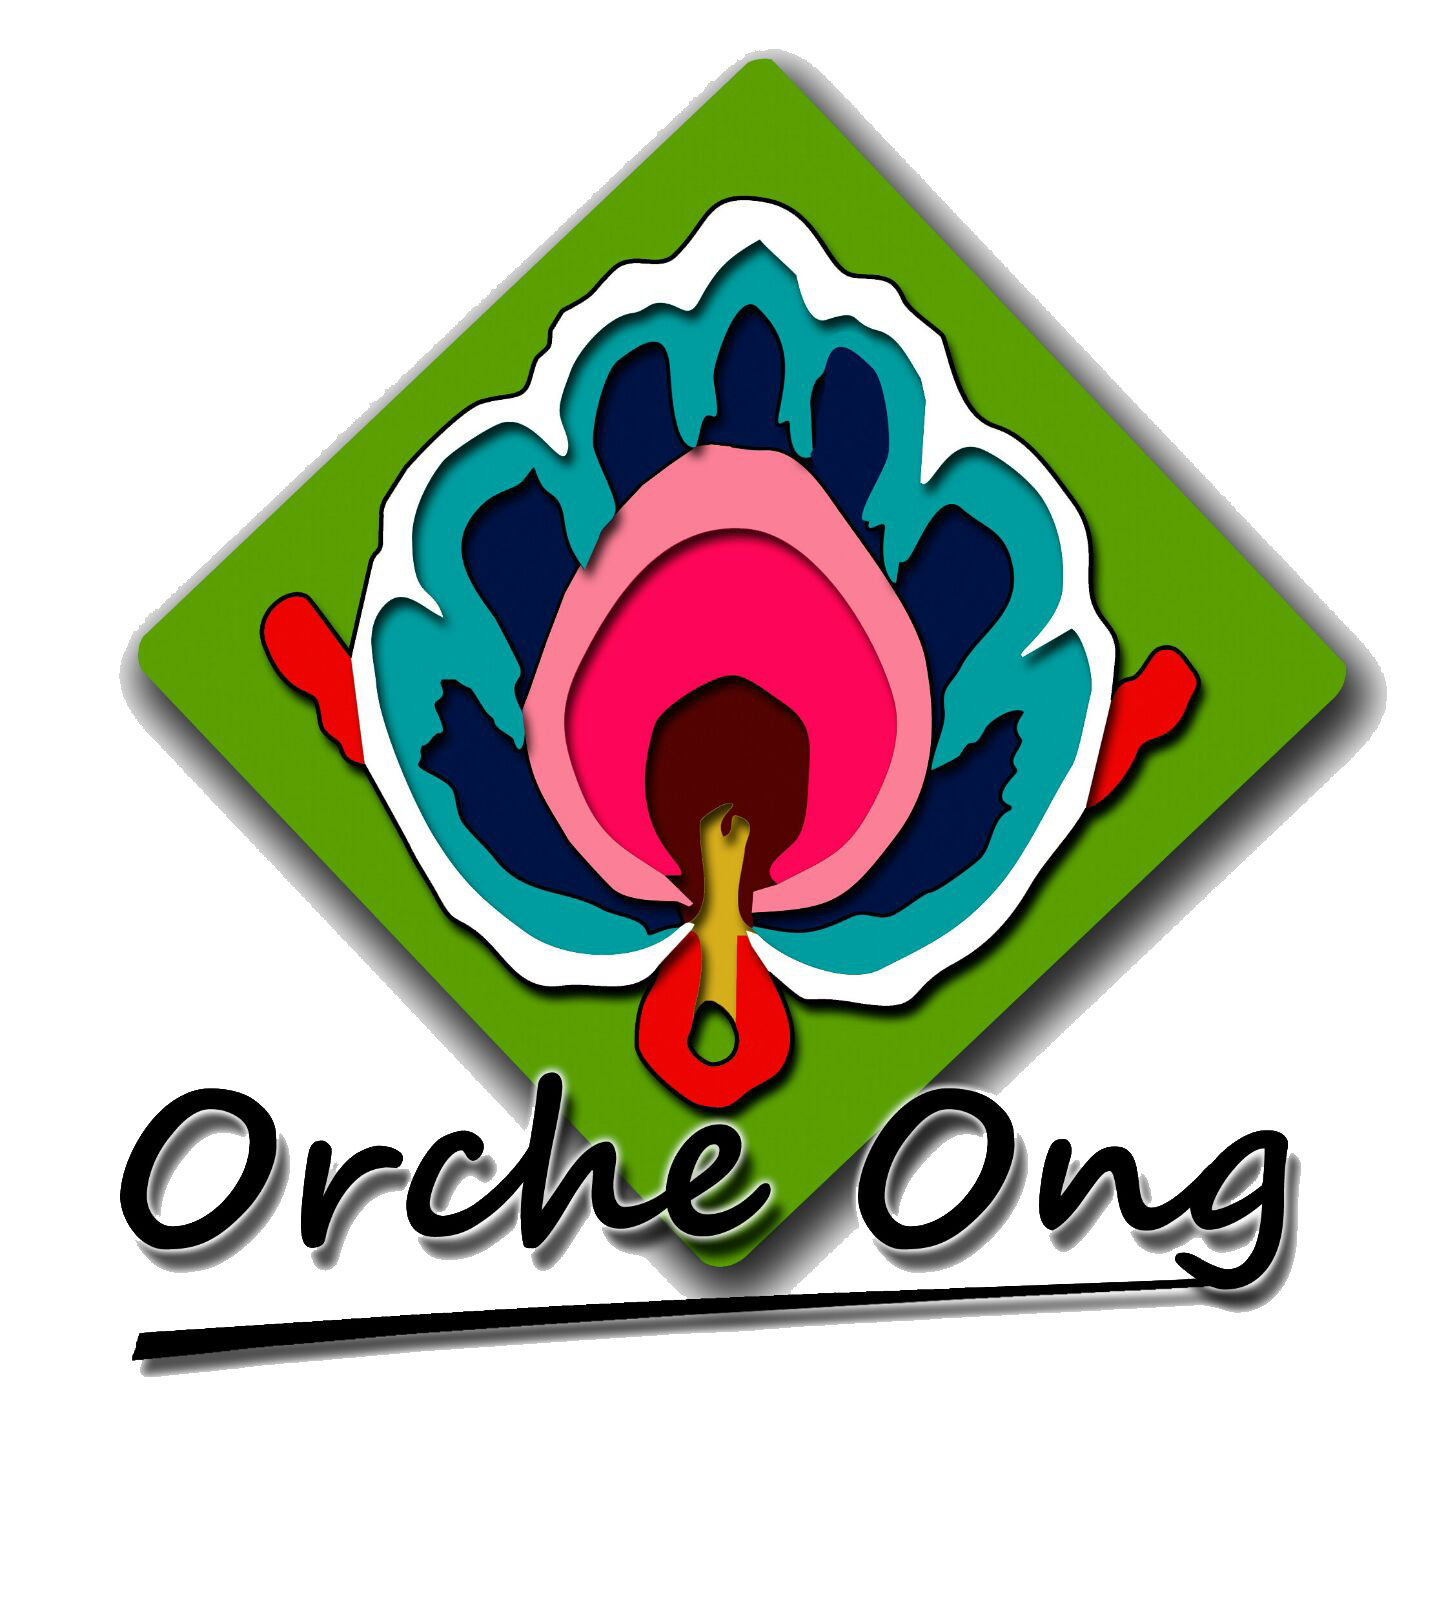 /logos/confian/orcheong.png